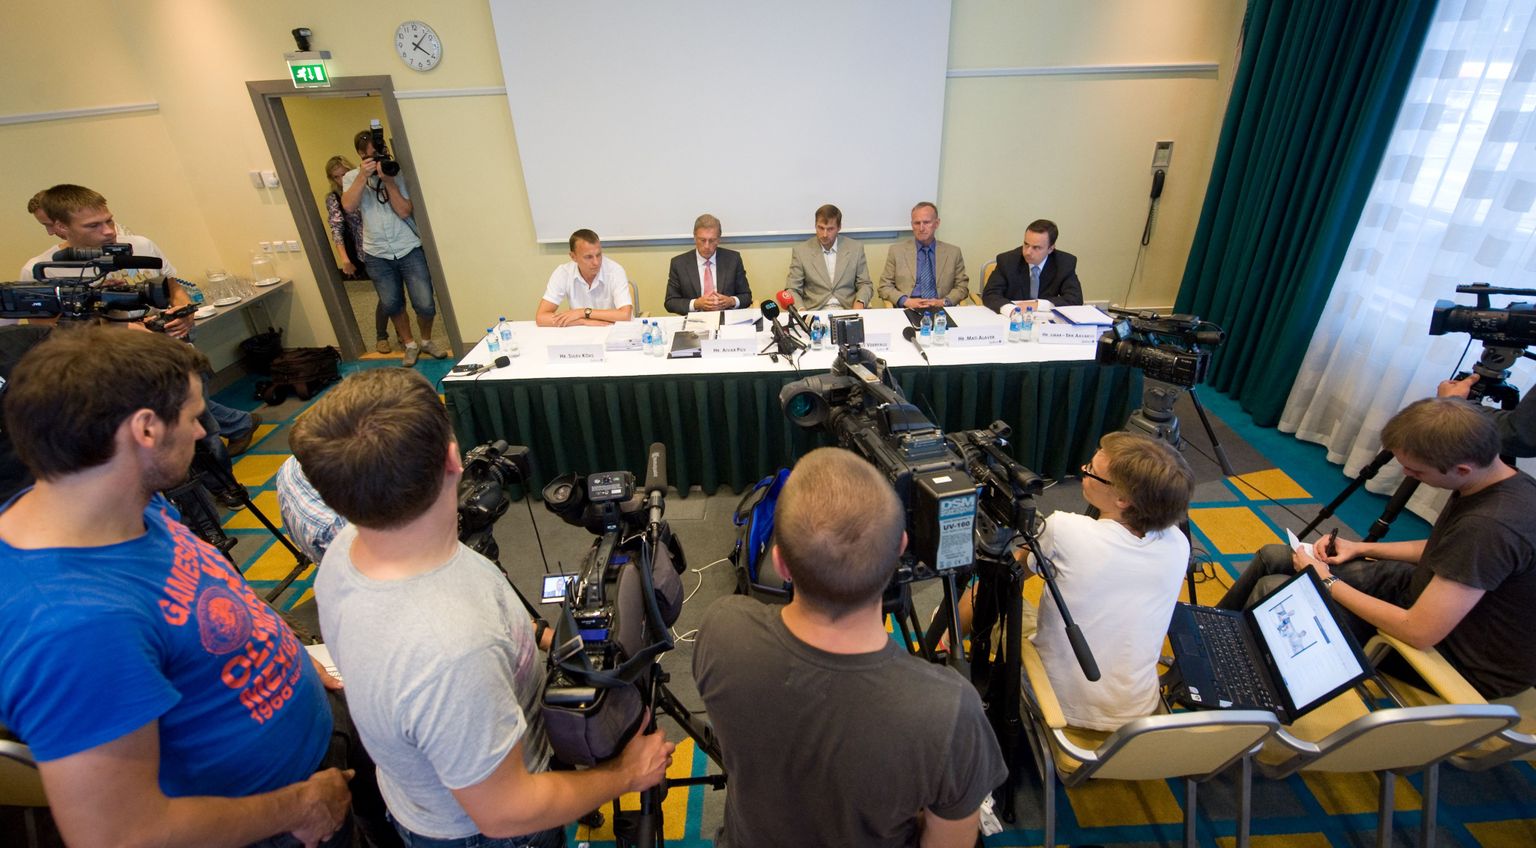 Пресс-конференция Андруса Веэрпалу (третий слева) и его представителей (Мати Алавер - четвертый слева).